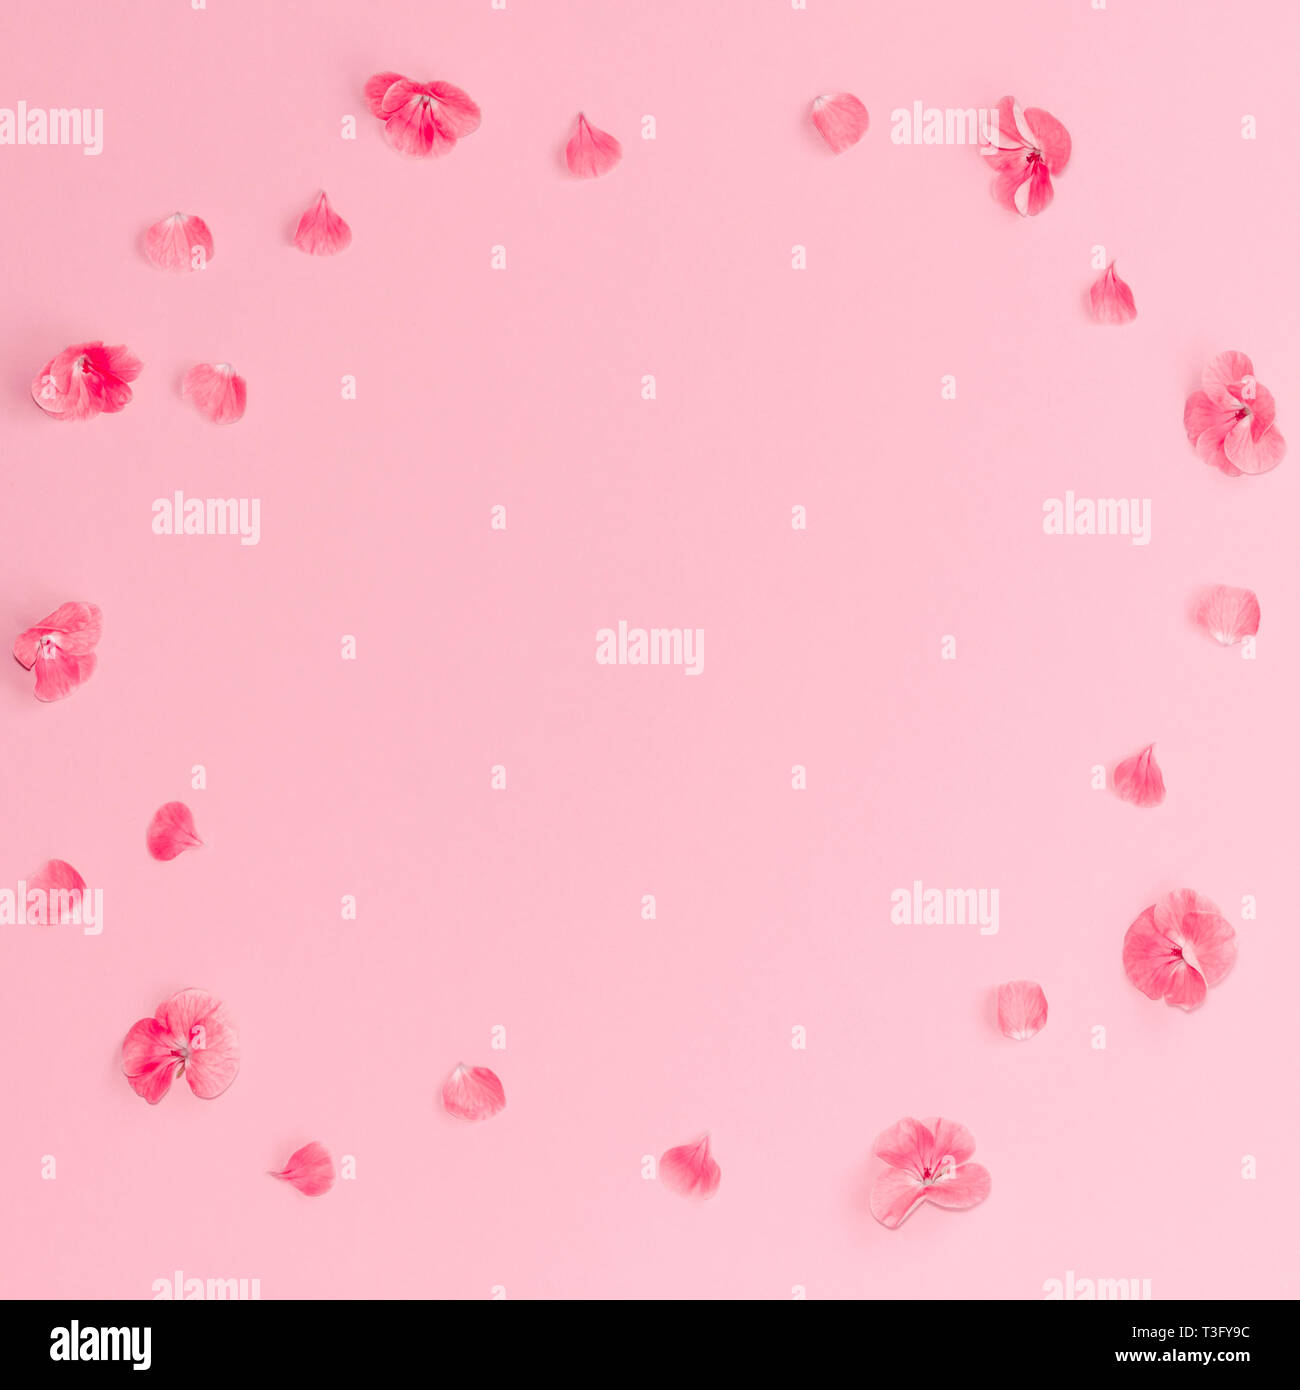 Pink Flowers: Thưởng thức hình ảnh những loài hoa màu hồng tươi tắn, tràn đầy sức sống. Sắc hồng làm tôn lên vẻ đẹp của loài hoa và cảm giác tươi mới cho người xem.